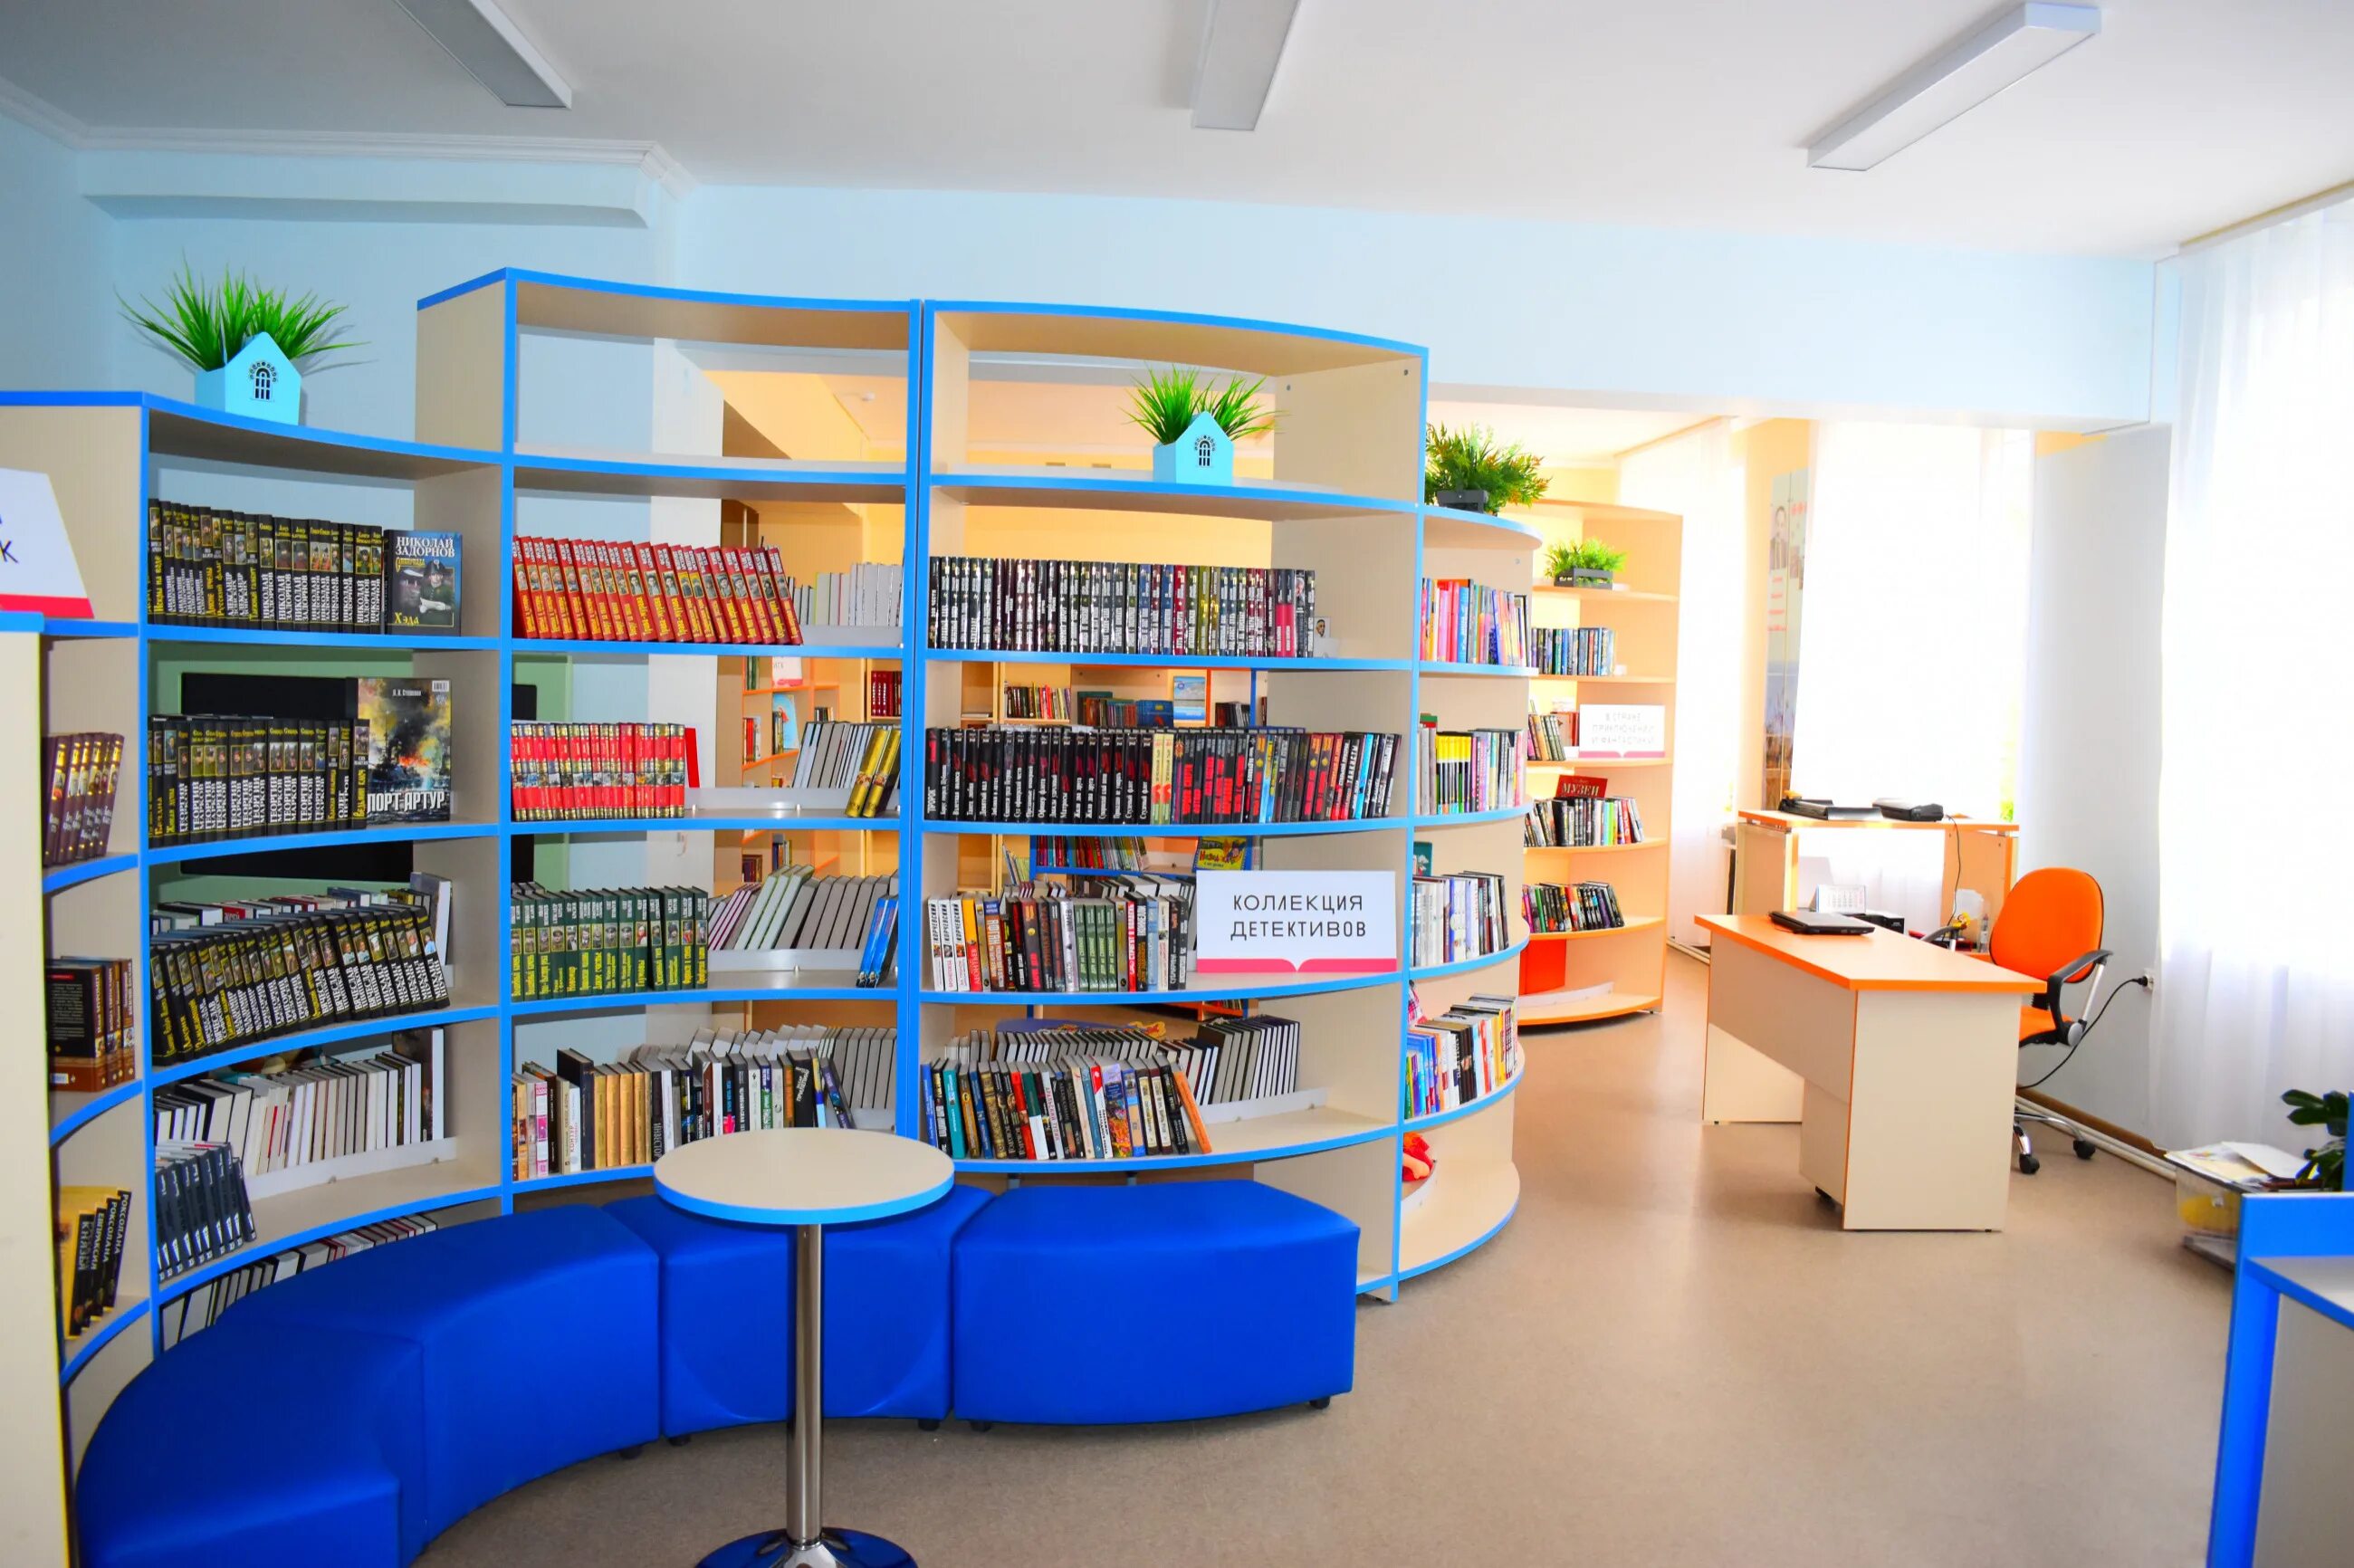 Библиотеки в новых условиях. Модельная библиотека. Новая библиотека. Библиотека нового поколения. Современная модельная библиотека.